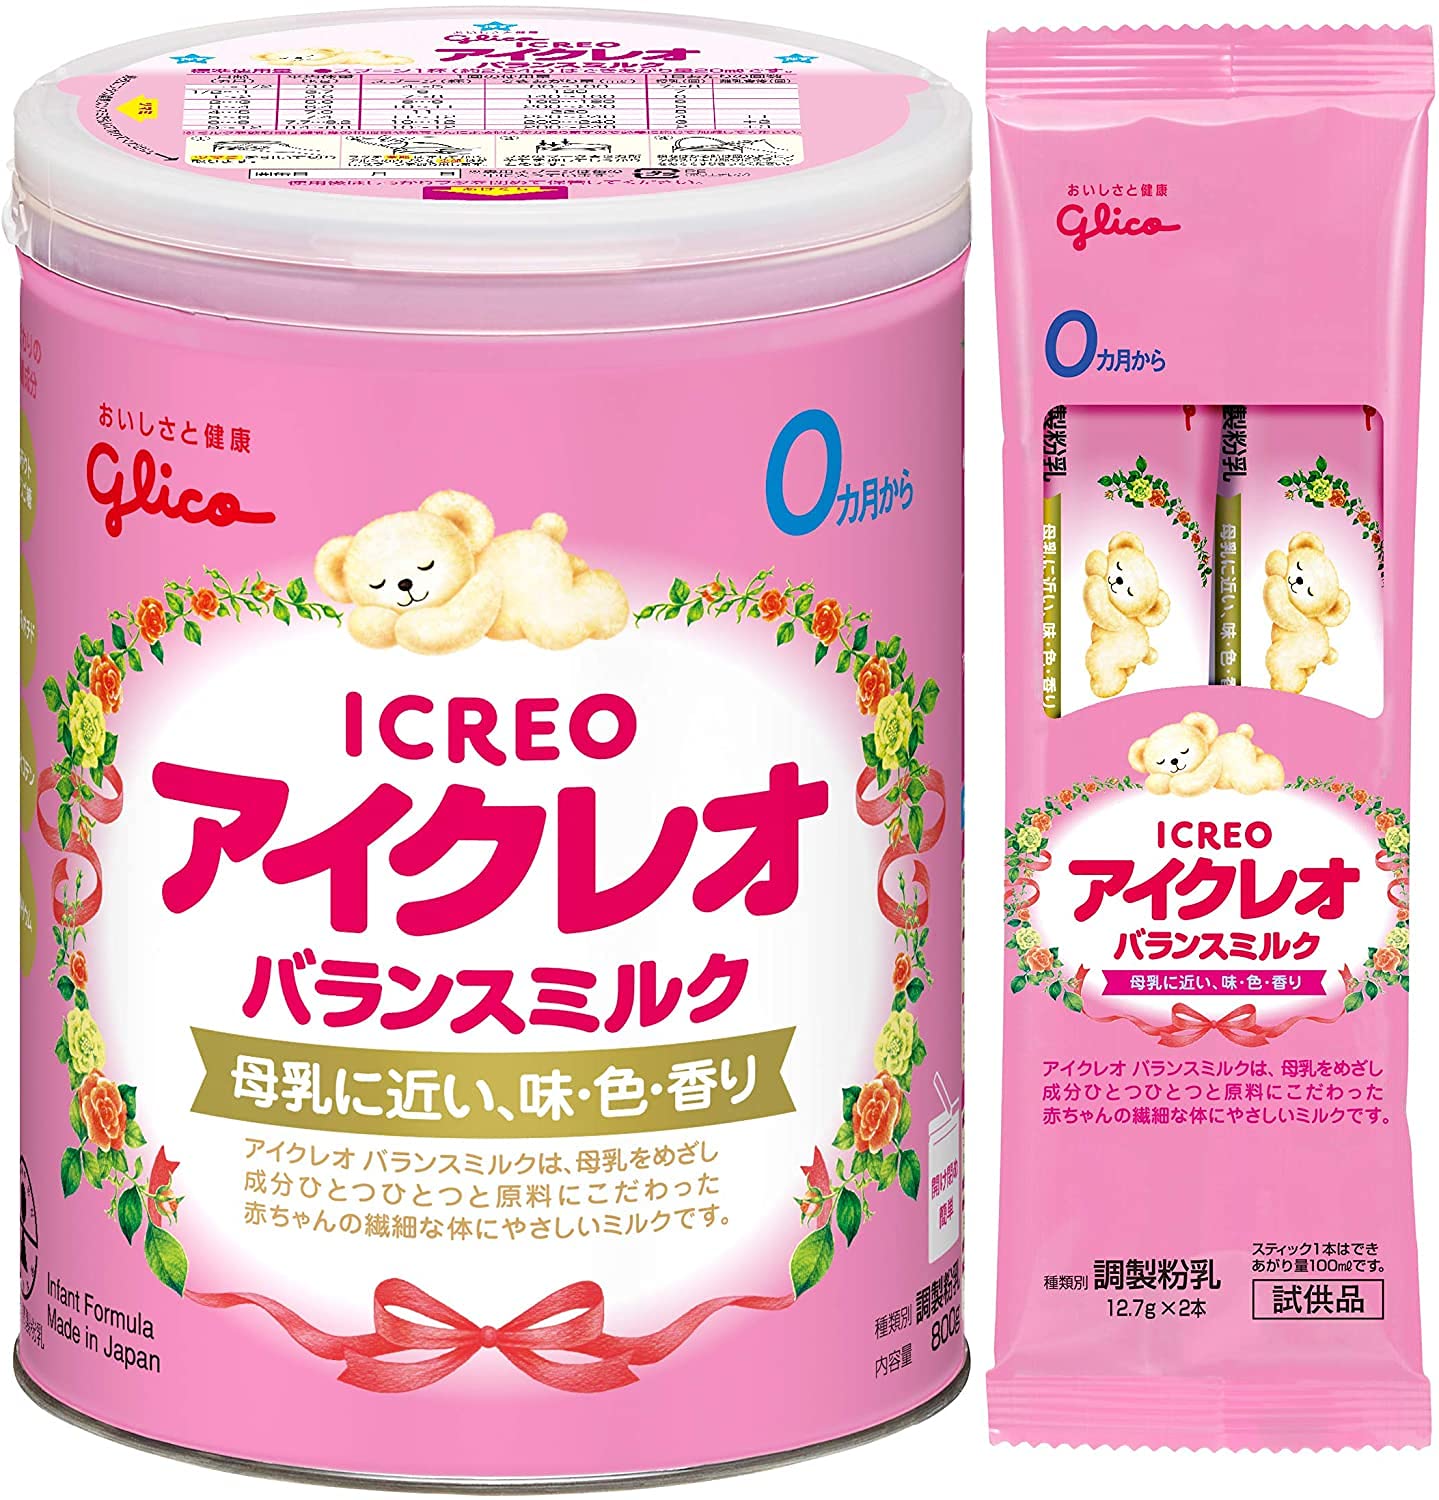 【】 アイクレオ バランスミルク800g (サンプル付) 粉ミルク ベビー用【0ヵ月~1歳頃】